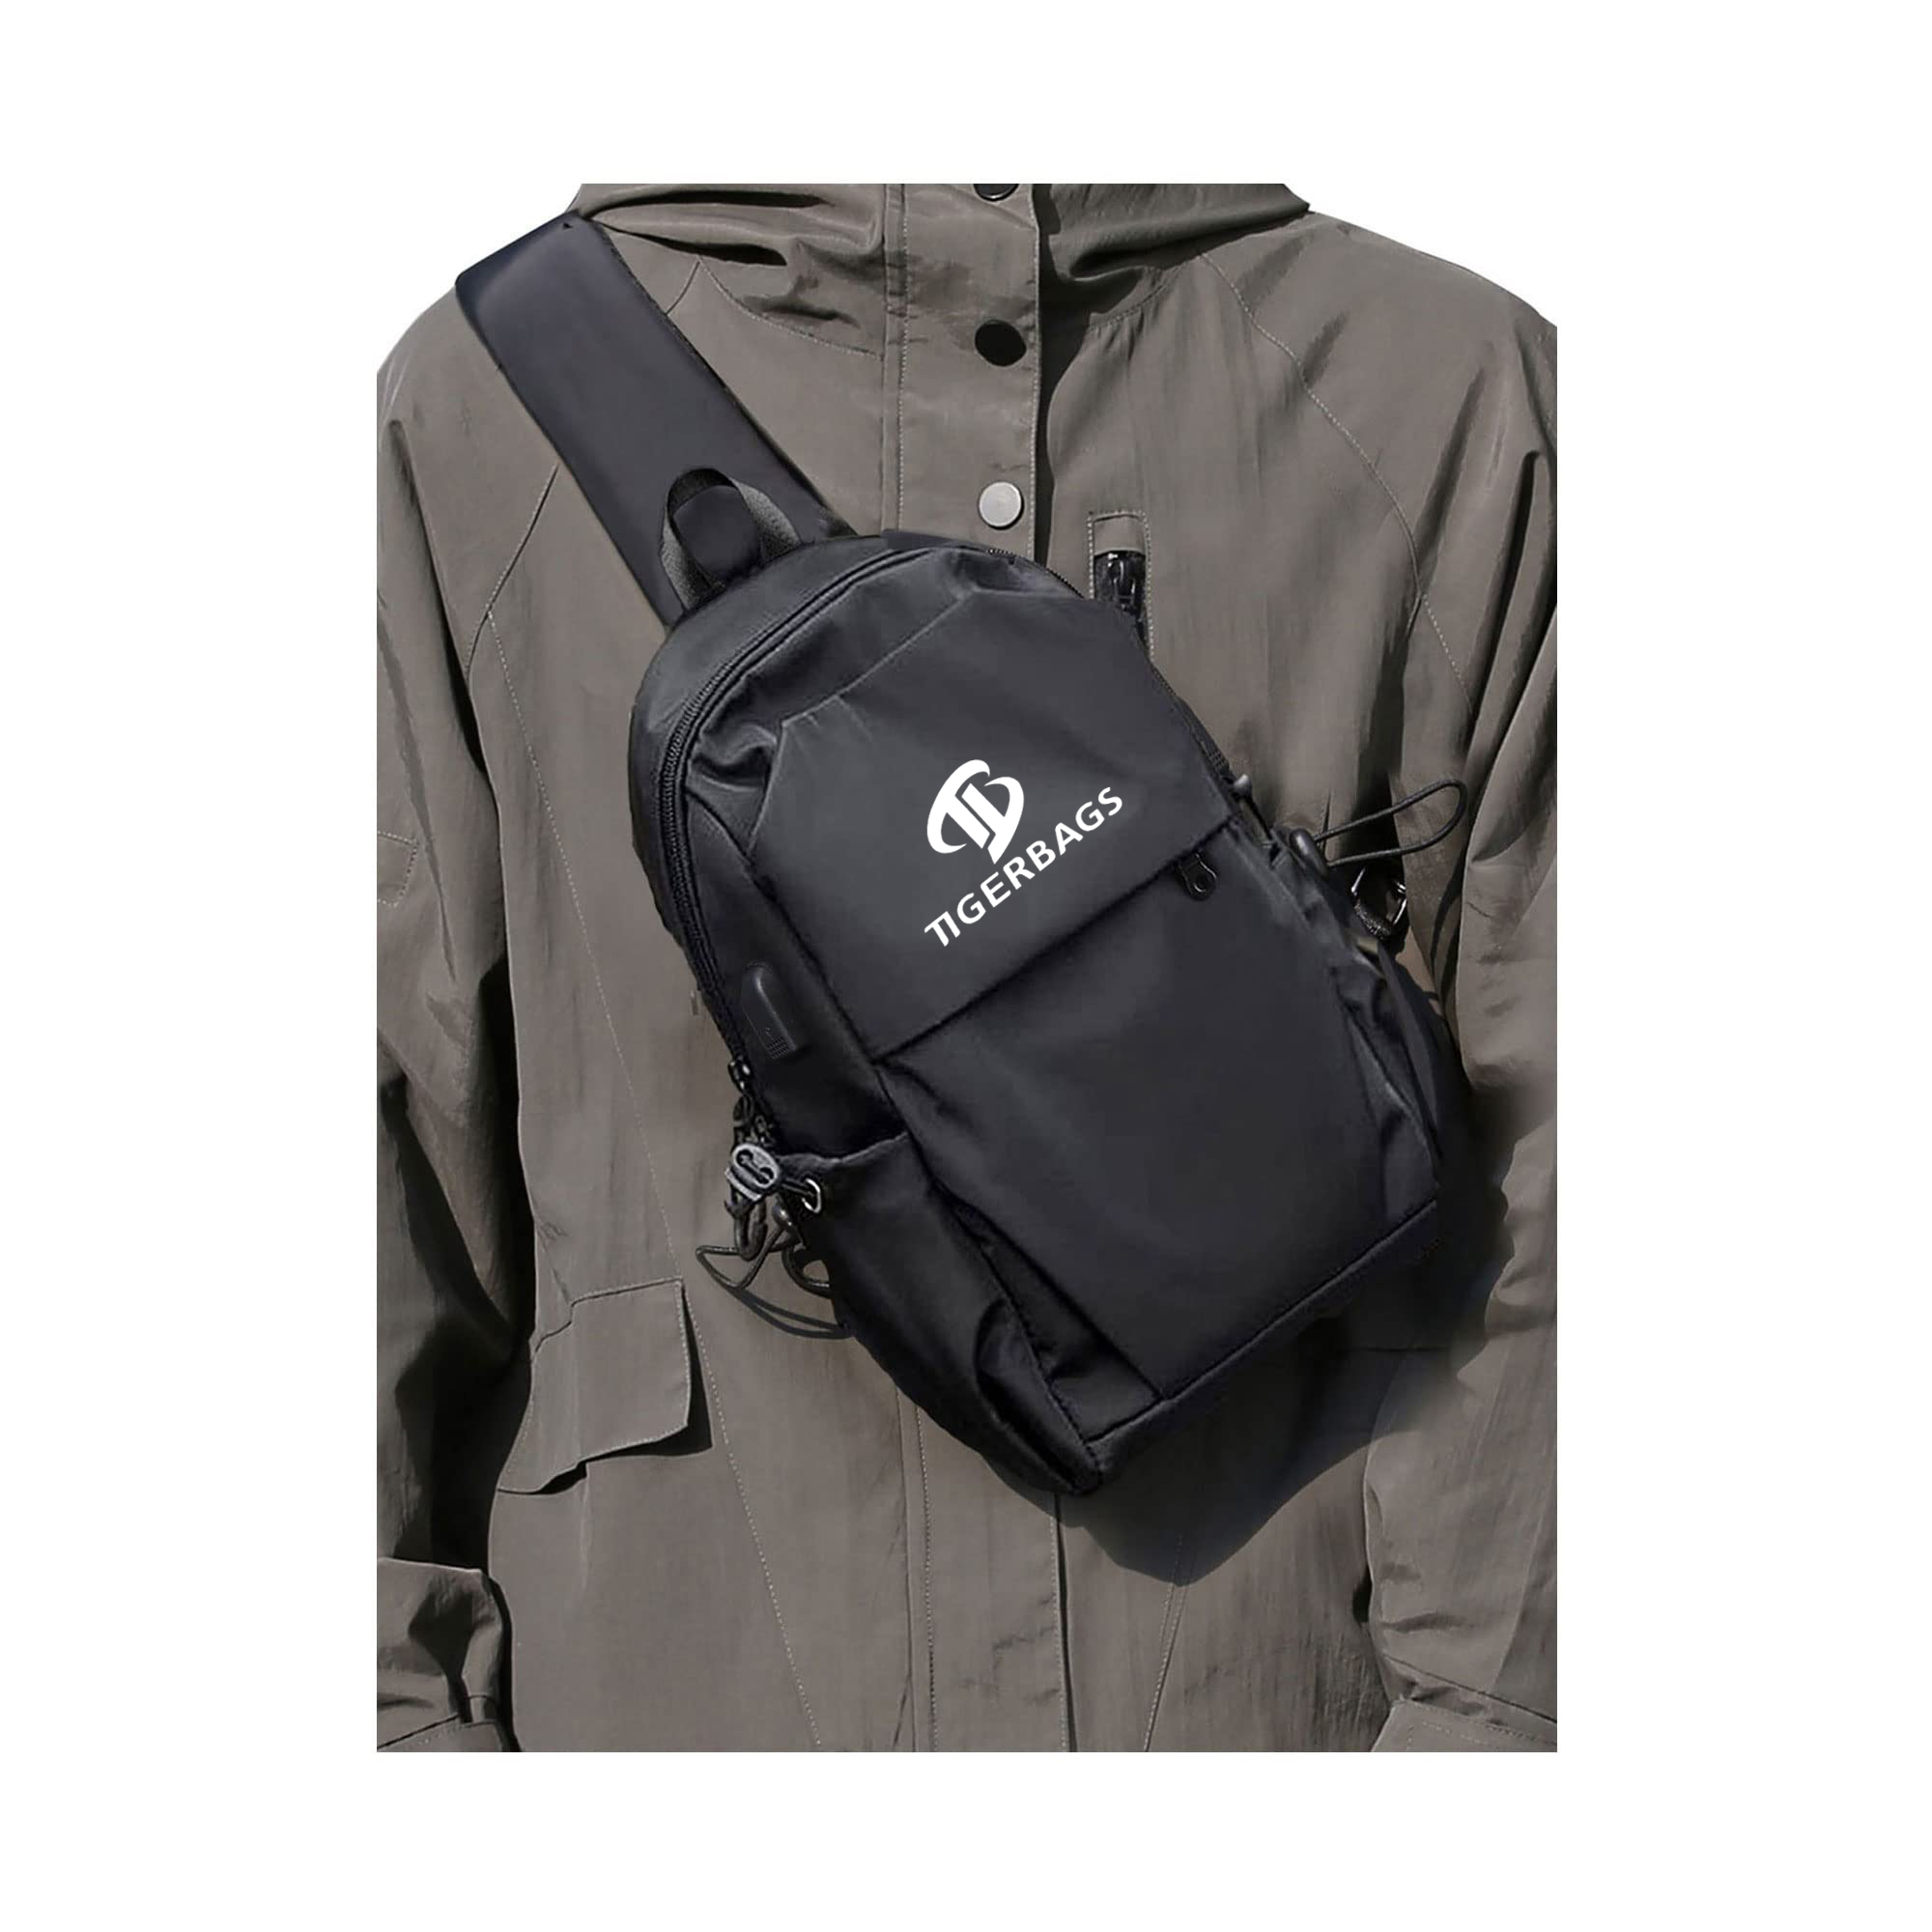 Bottom price Spiderman Backpack - Crossbody bag for men and women shoulder bag USB charger chest bag – TIGER